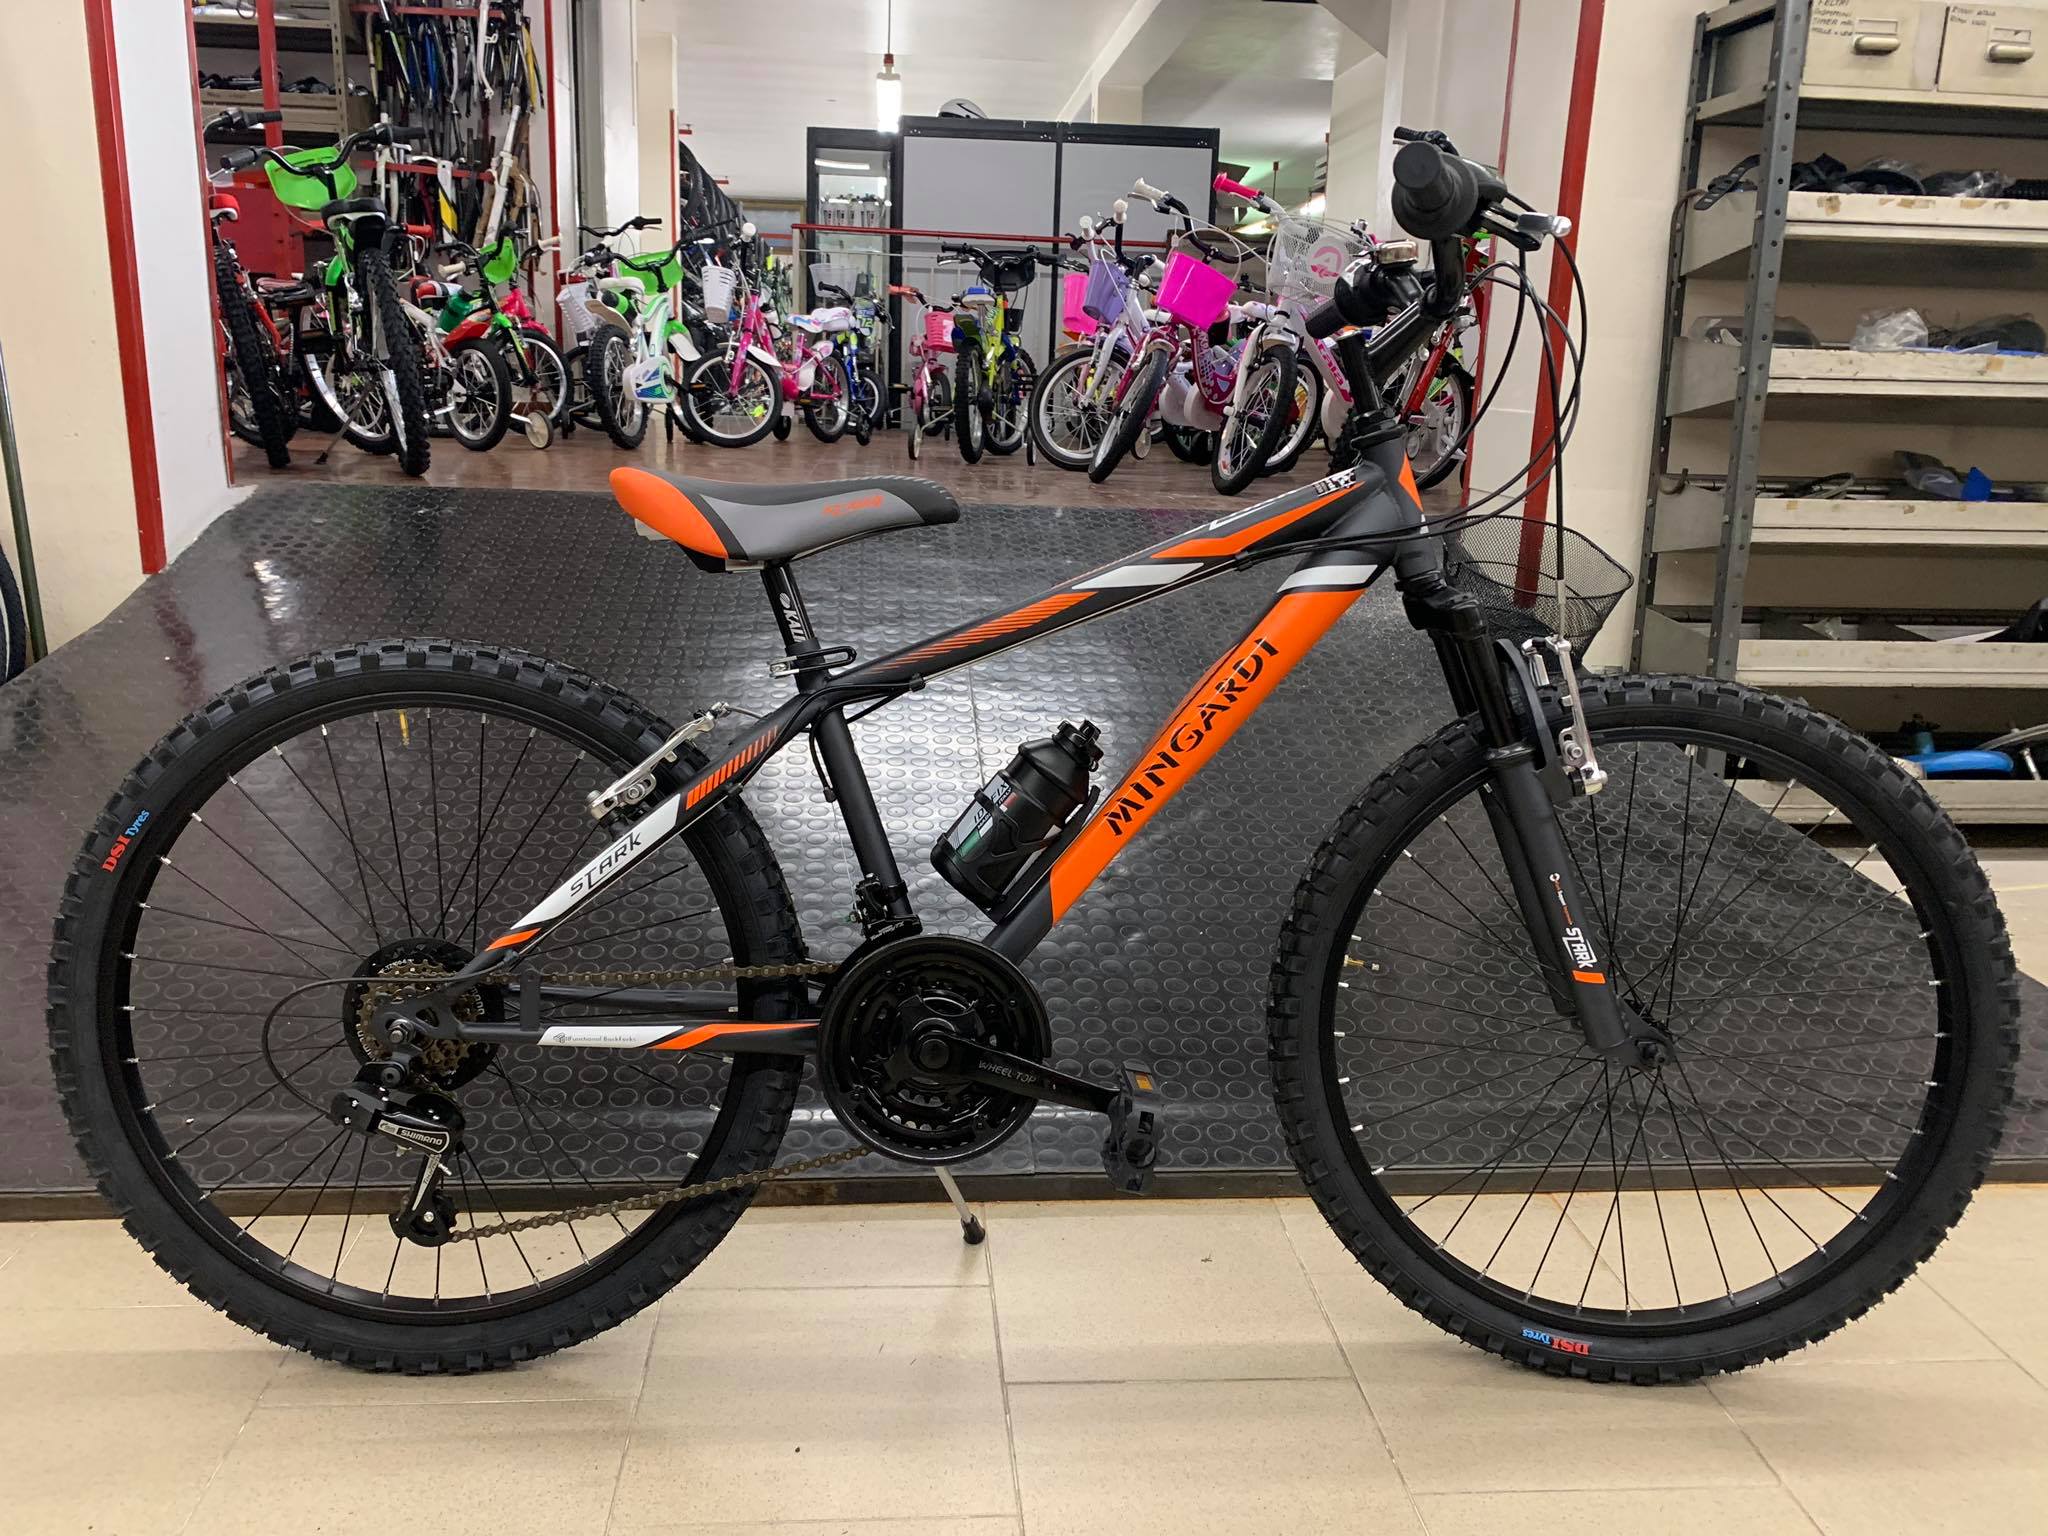 Bici bicicletta 24 arancio 